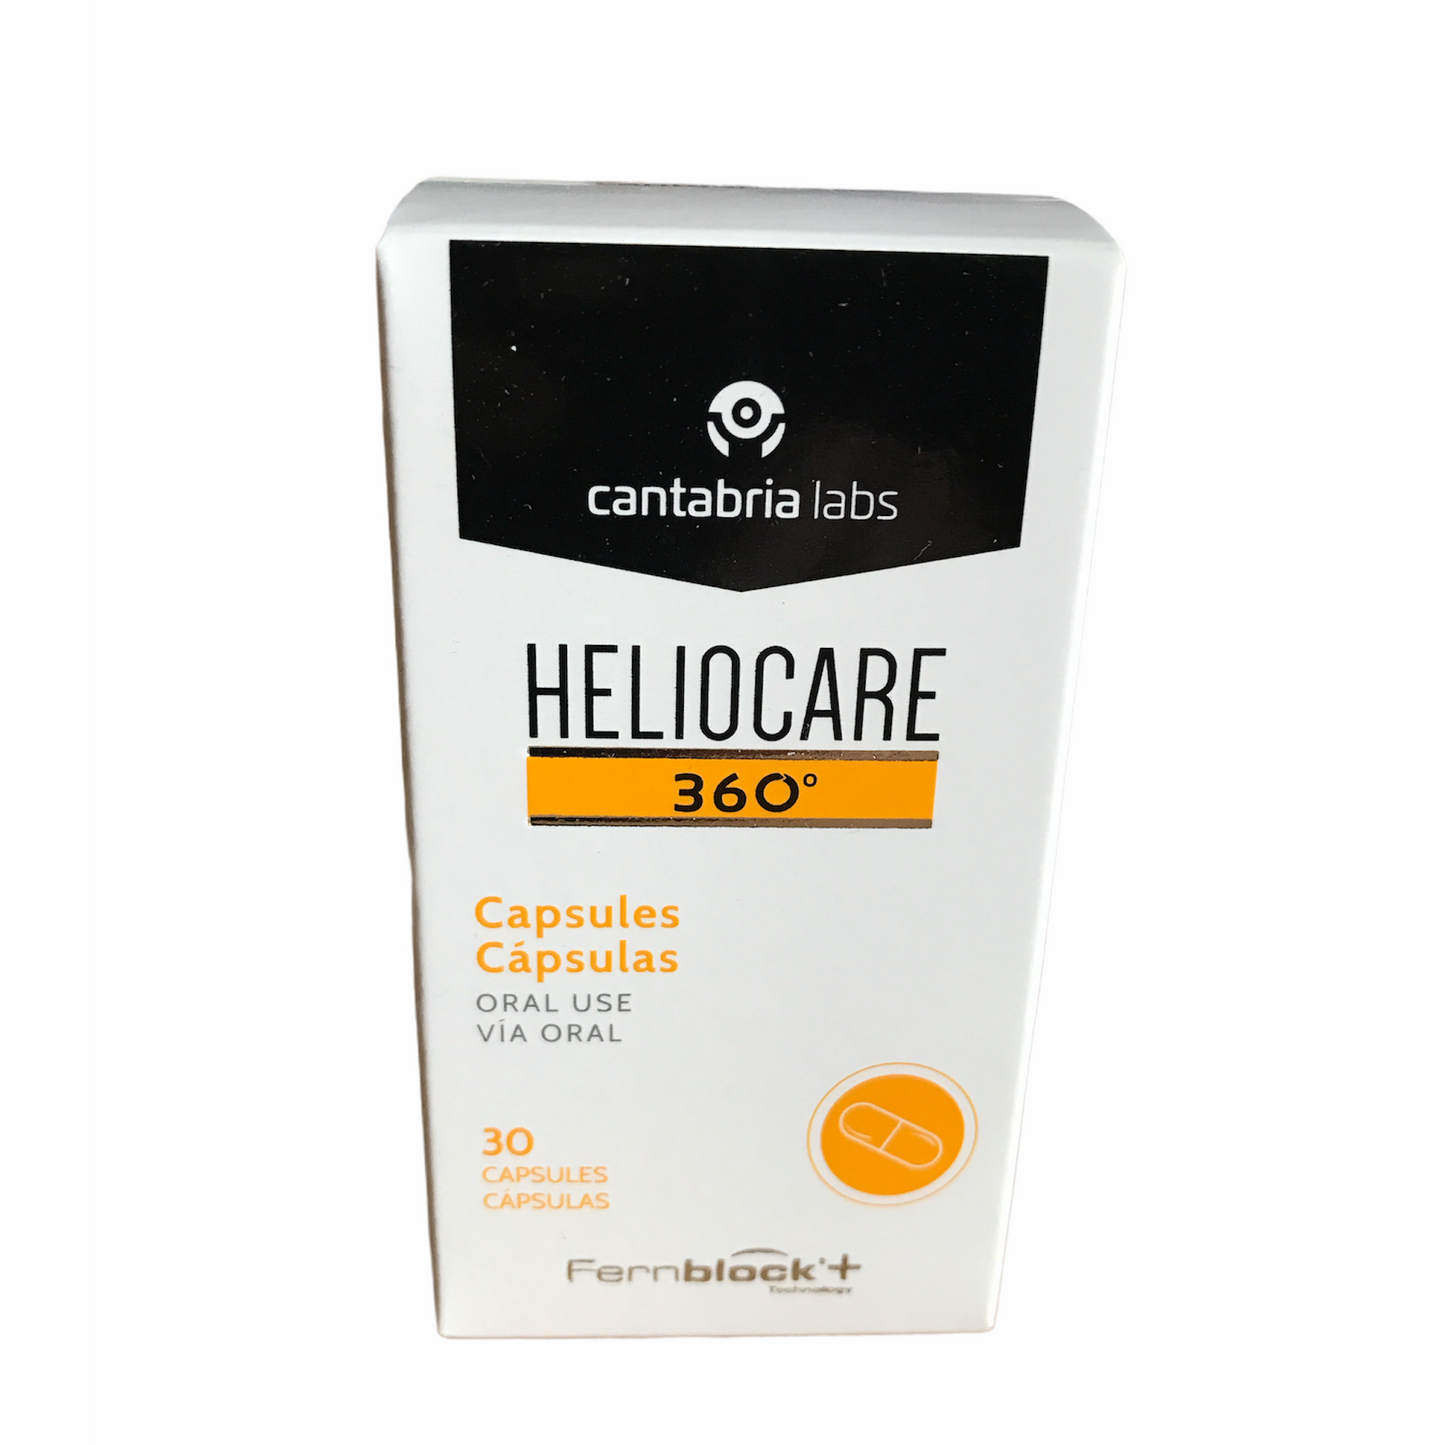 Heliocare 360 Capsules (30 capsules)